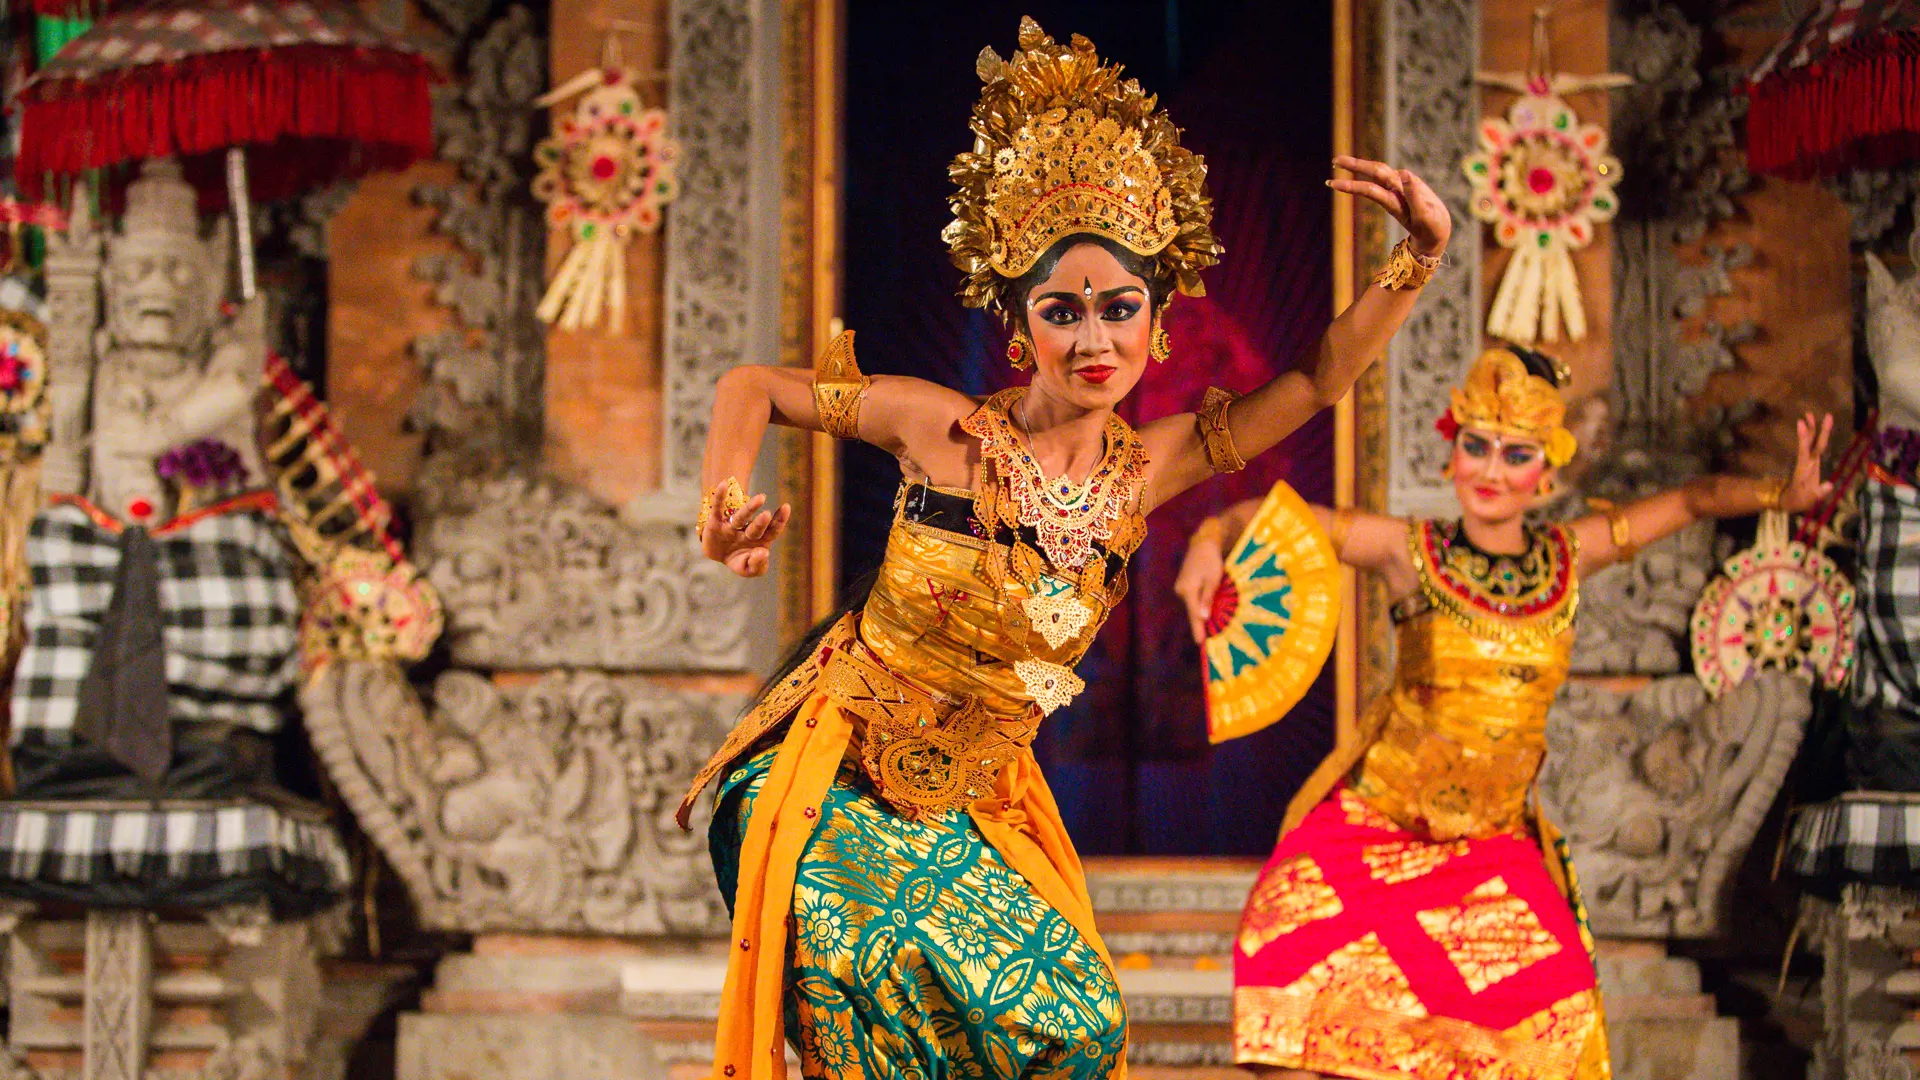 UBUD, BALI, INDONESIA - FEBRUARY, 23 Legong traditional Balinese dance in Ubud, Bali.jpg